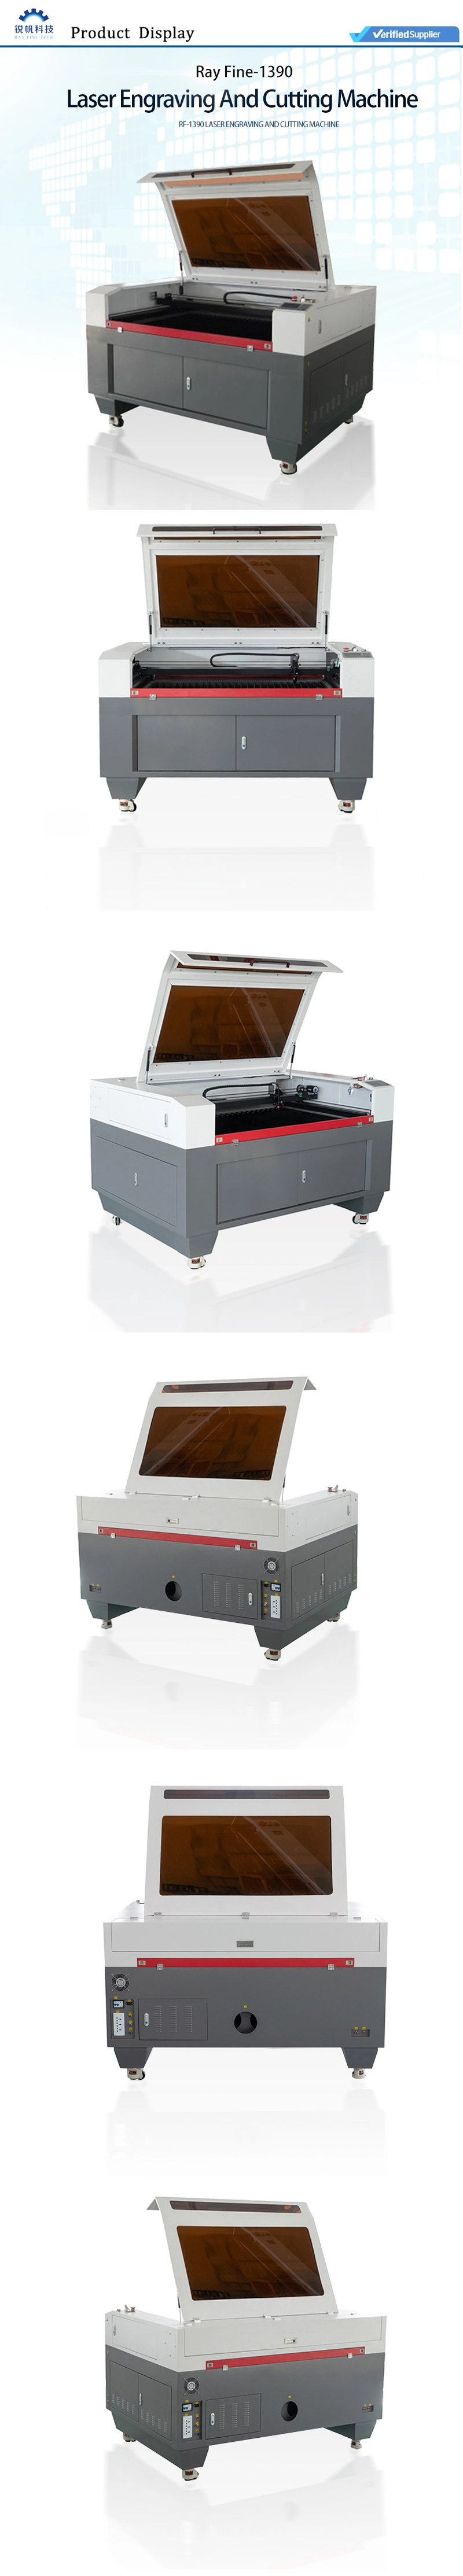 Laser Cutting Engraving Machine Laser CO2 1390 Industrial Wood Laser Engraving Machine